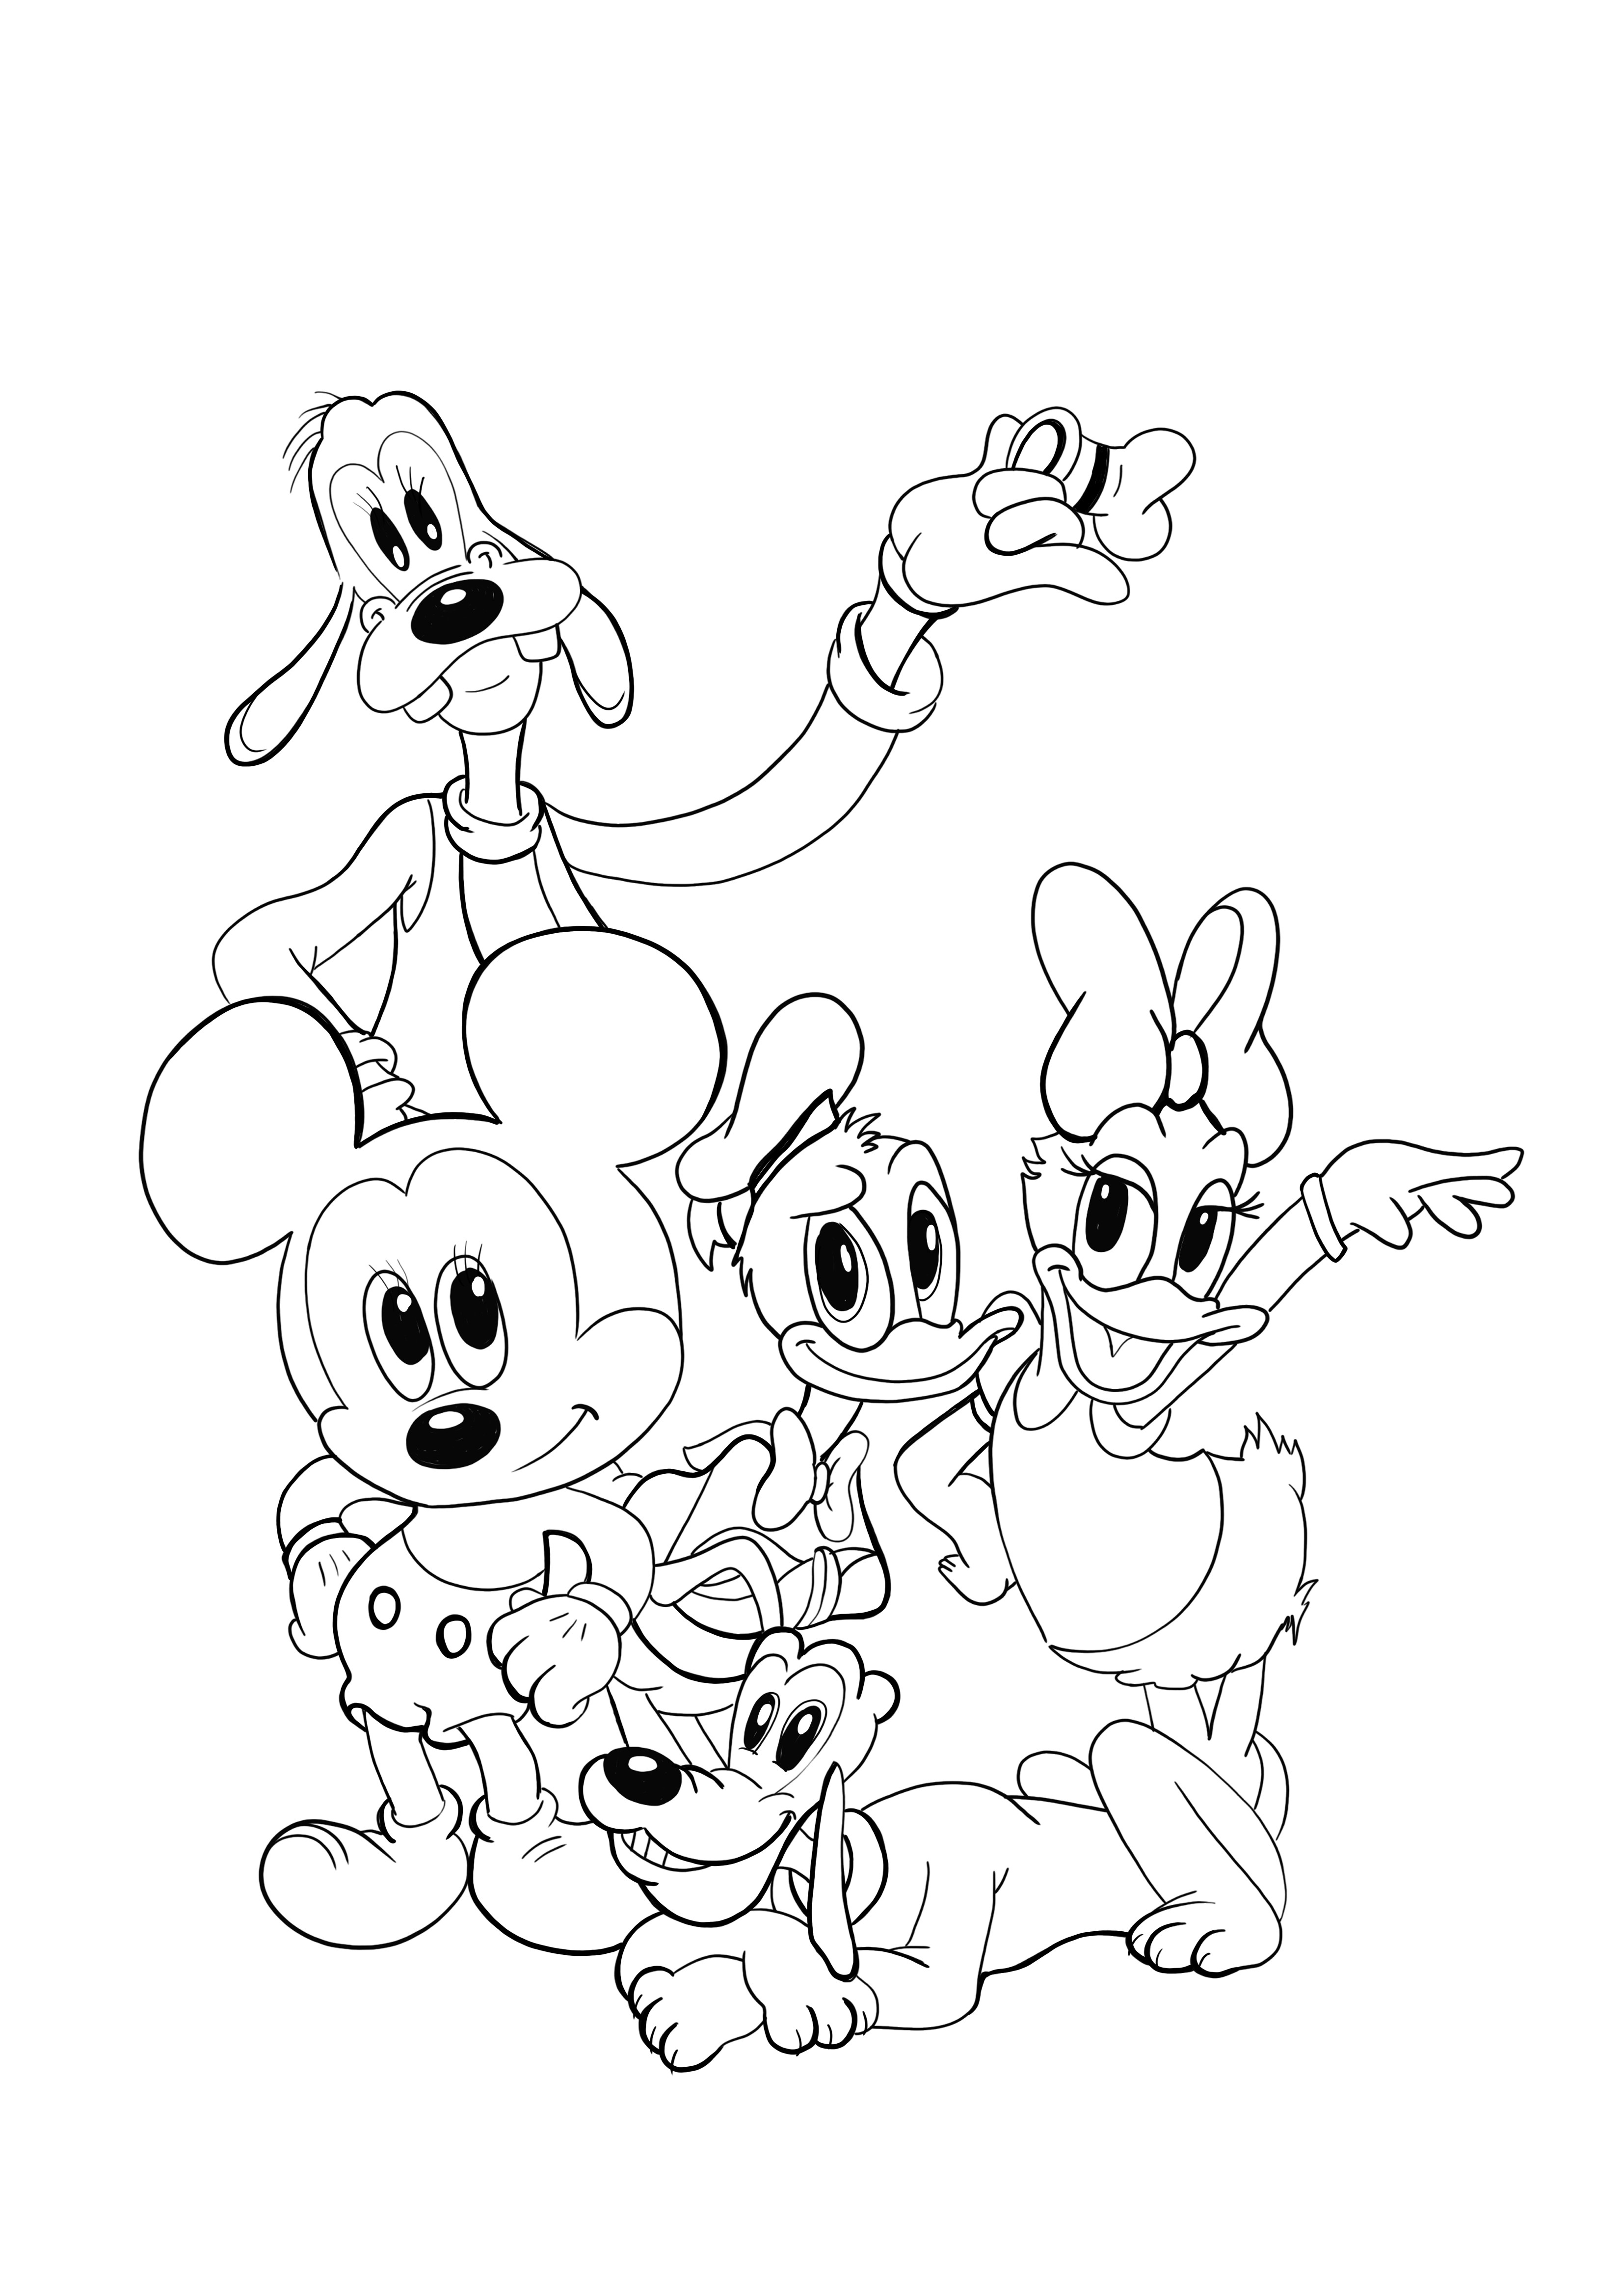 Desenho para colorir do jovem Pluto-Minnie-Donald-e-amigos para baixar de graça